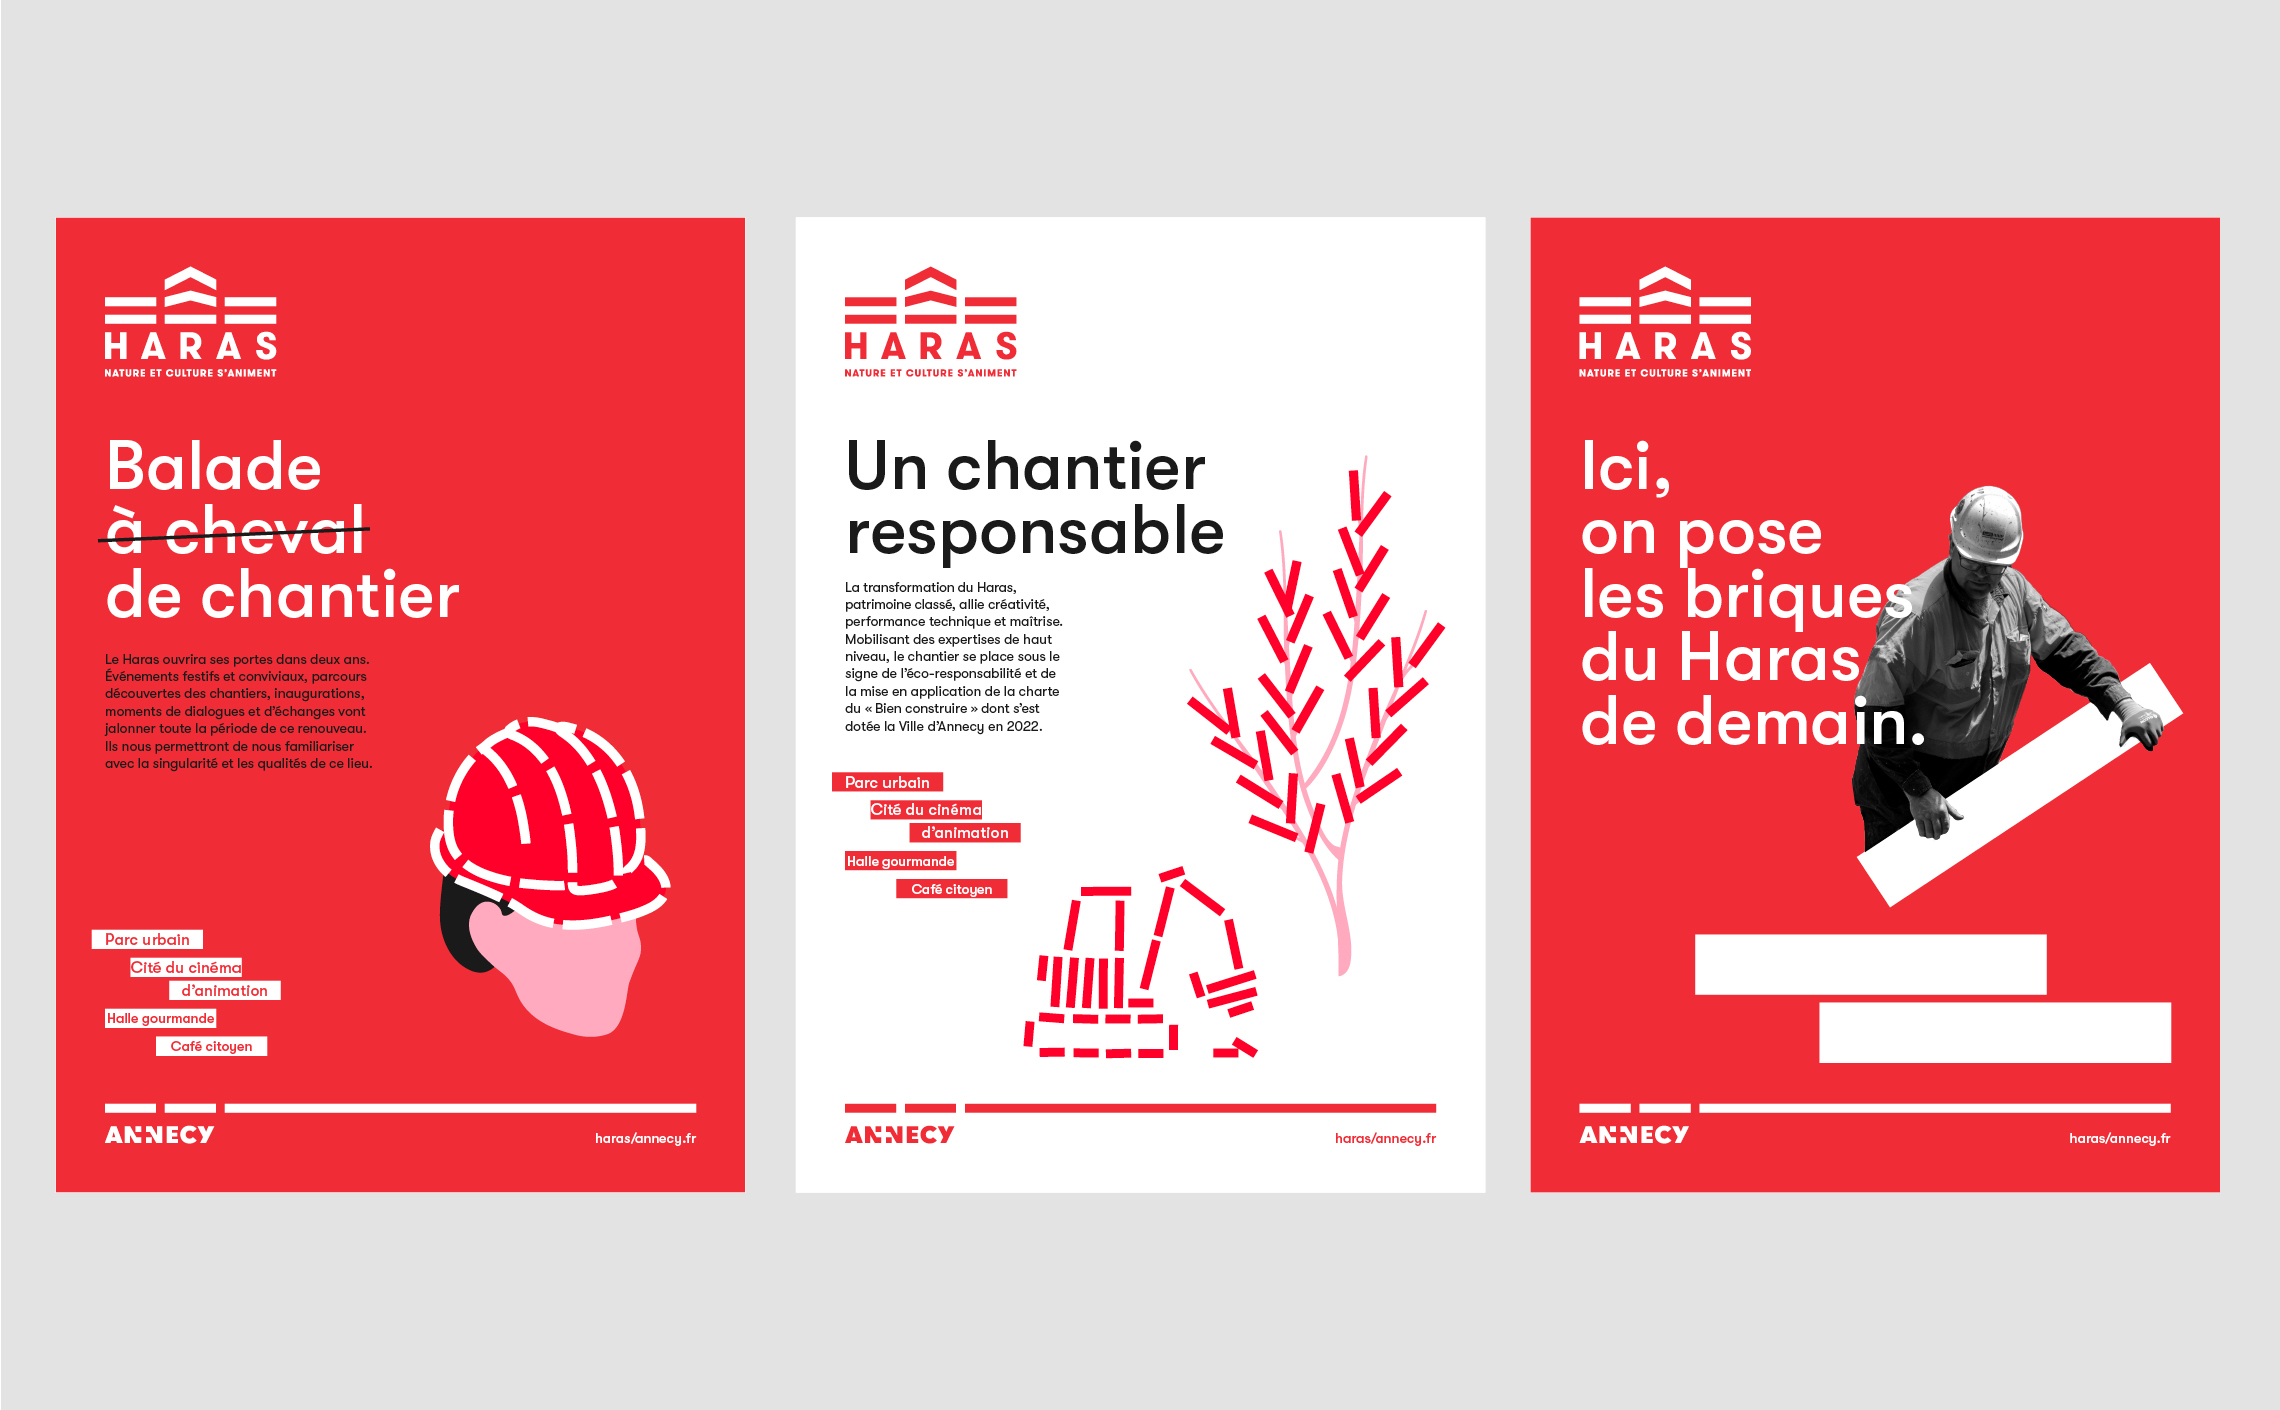 Haras-Annecy-identite-visuelle-affiche-information-chantier